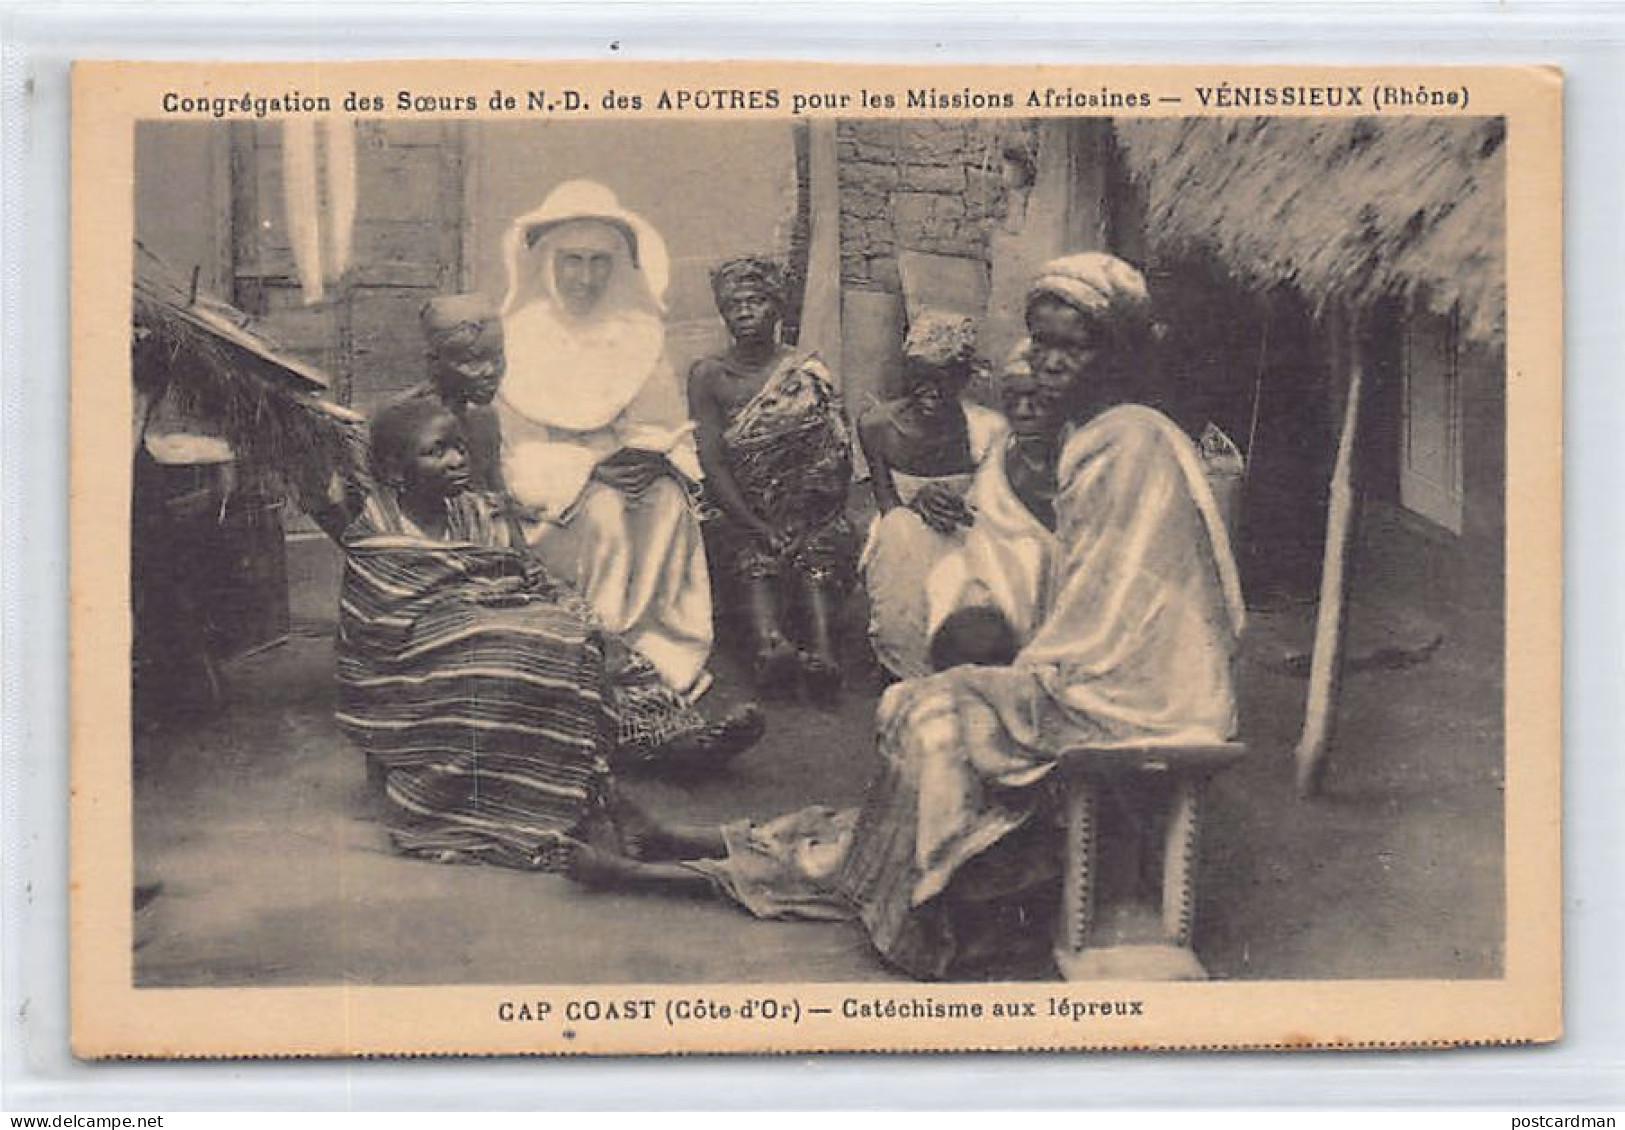 Ghana - CAPE COAST - Catechism For Lepers - Publ. Soeurs De N.-D. Des Apôtres  - Ghana - Gold Coast